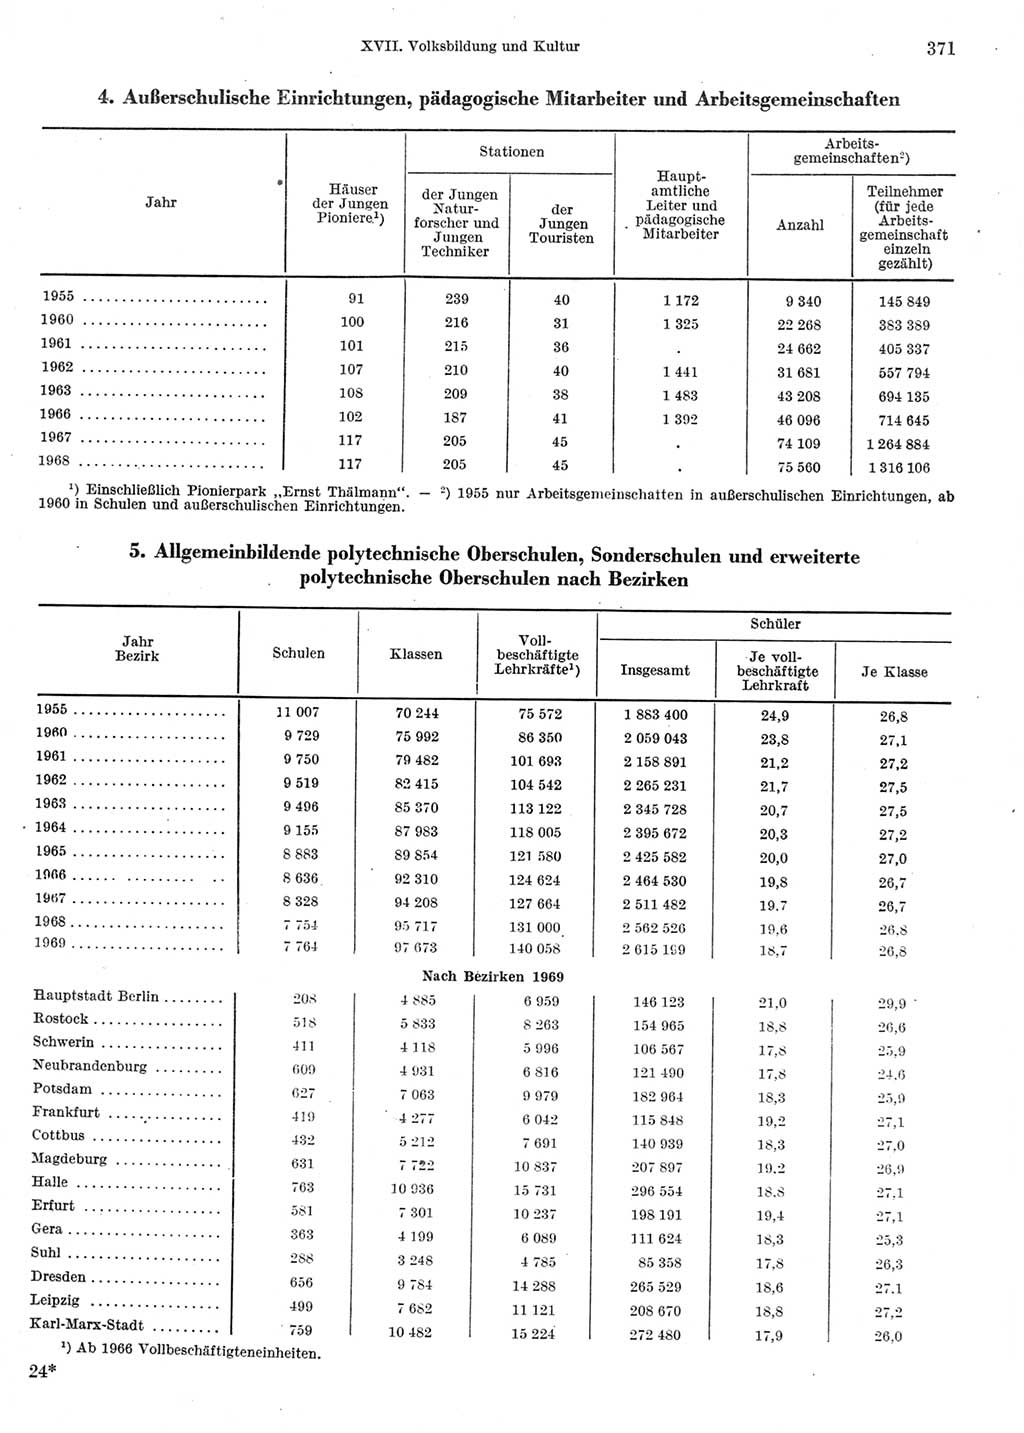 Statistisches Jahrbuch der Deutschen Demokratischen Republik (DDR) 1970, Seite 371 (Stat. Jb. DDR 1970, S. 371)